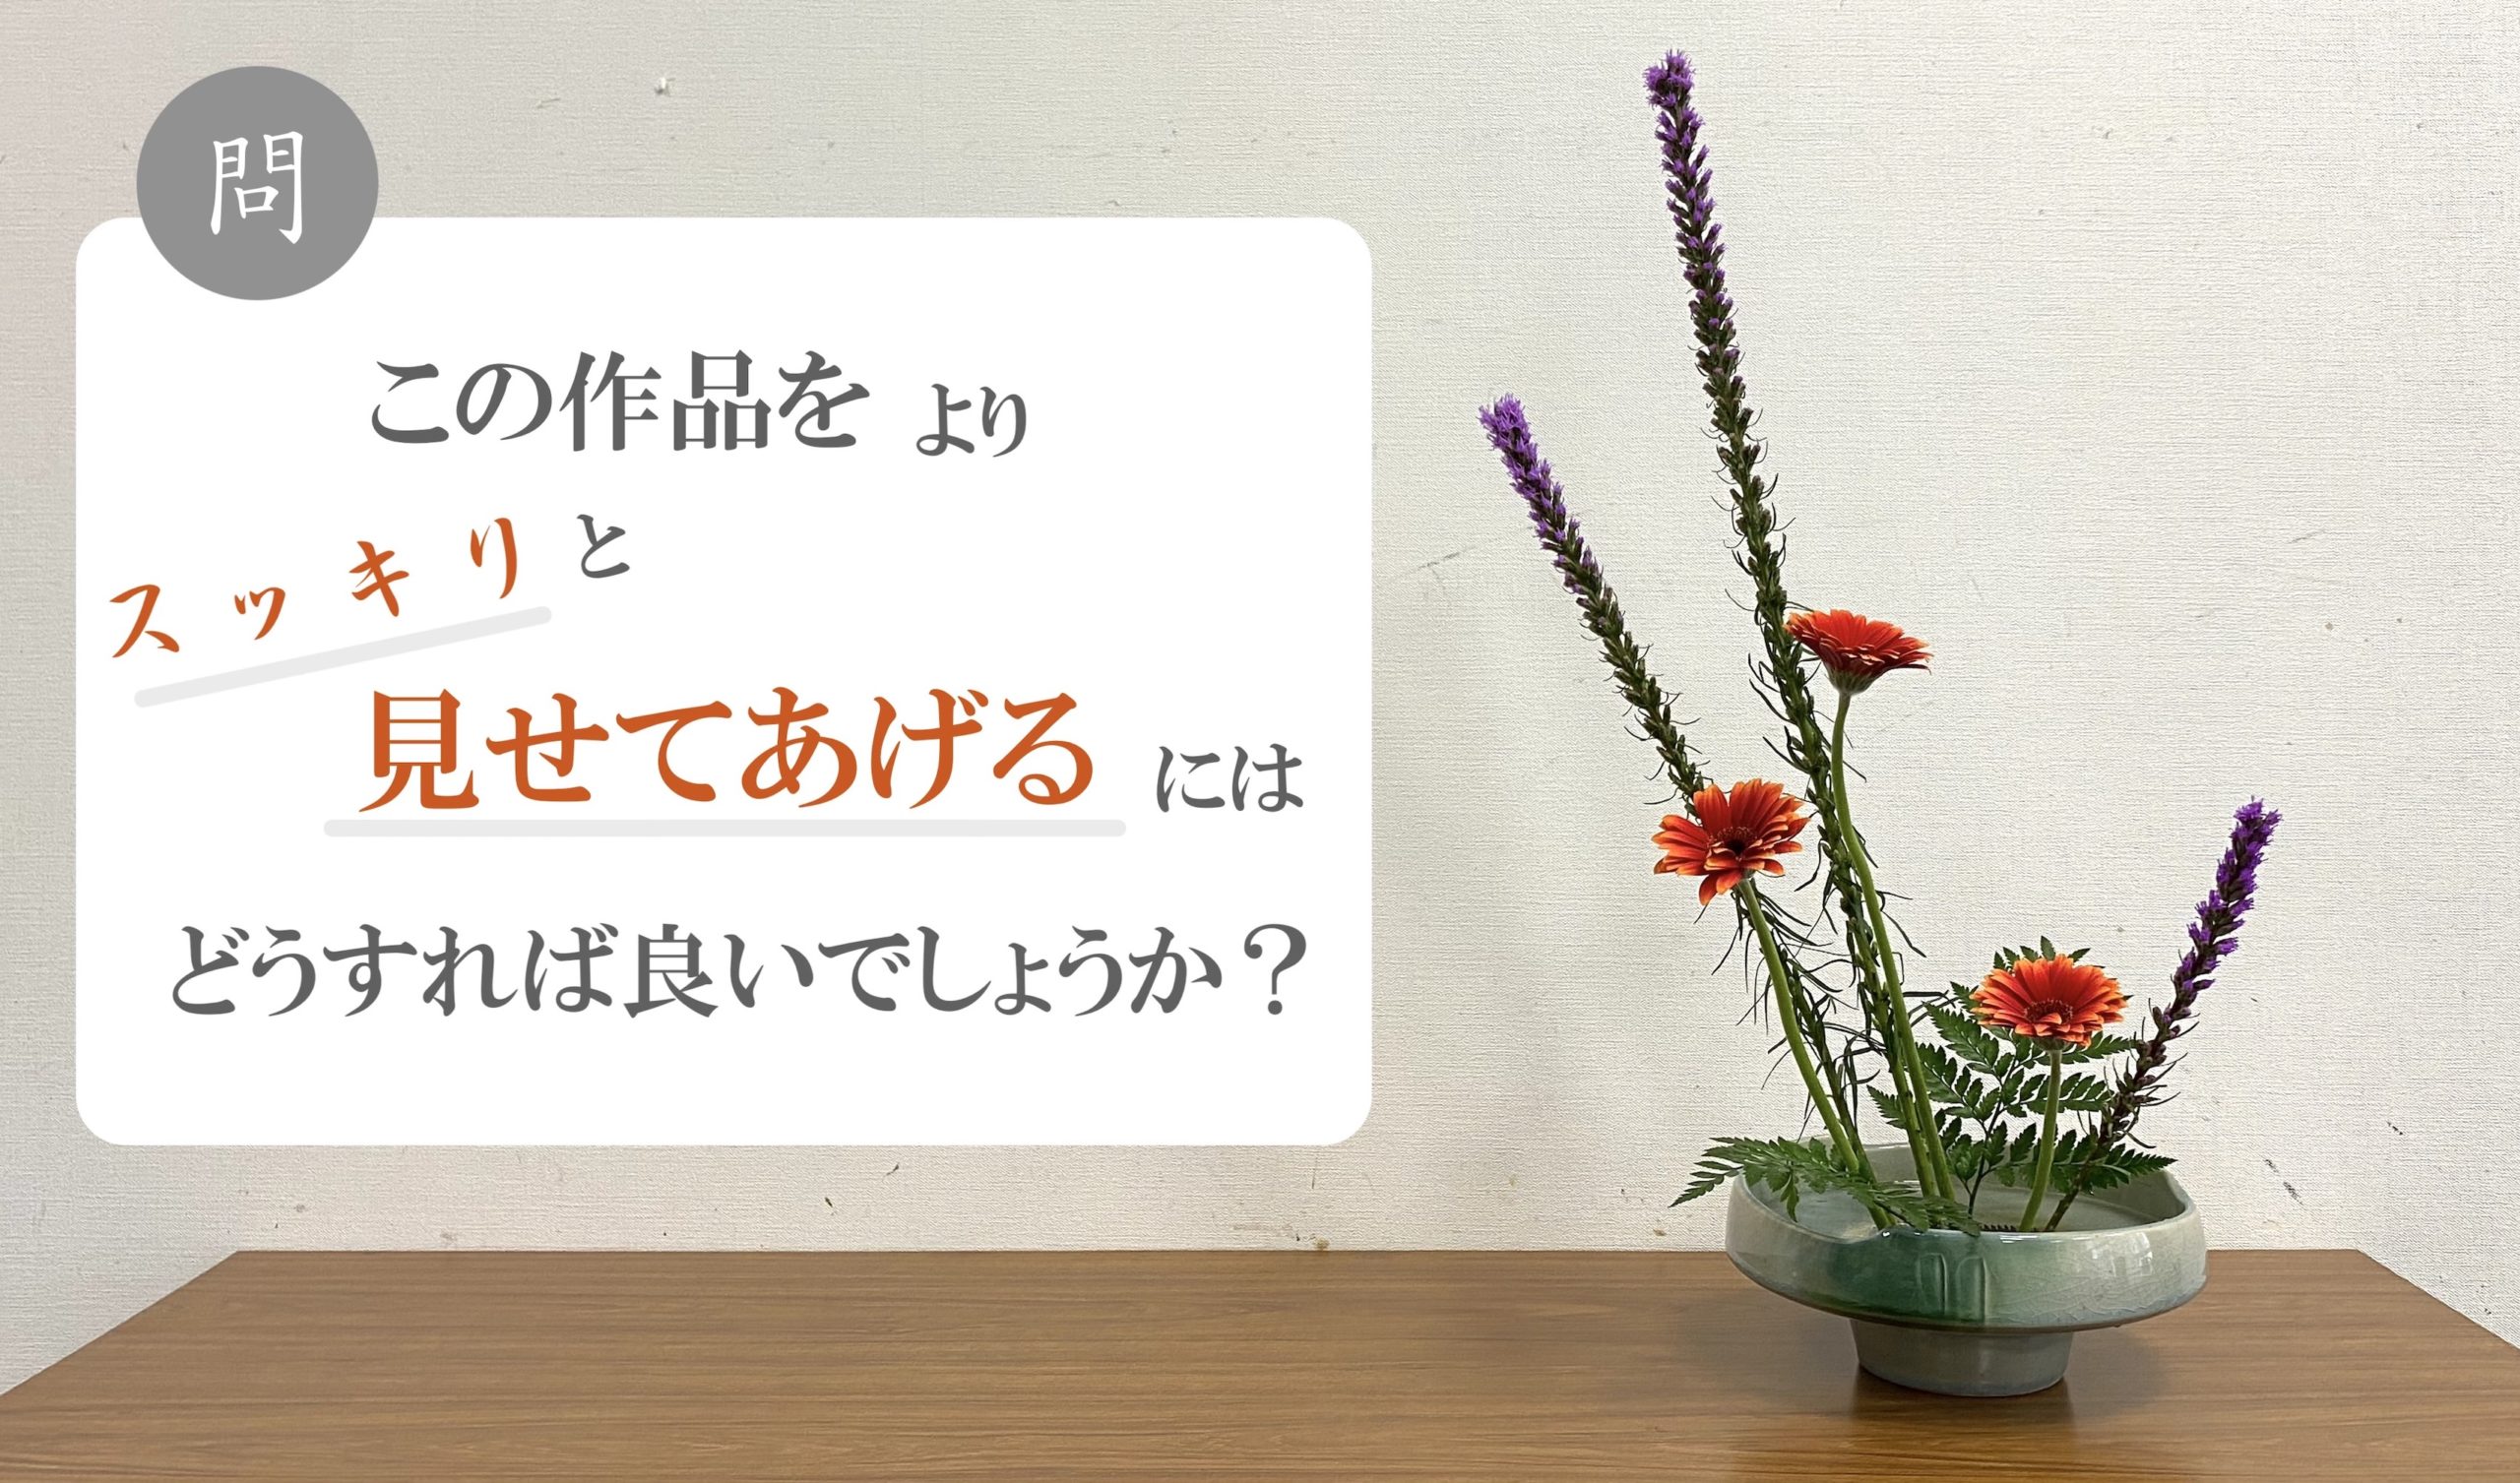 生け花lesson5 問 この作品をよりスッキリ見せるにはどうすれば良いでしょうか Ikebana いけばな 古流かたばみ会